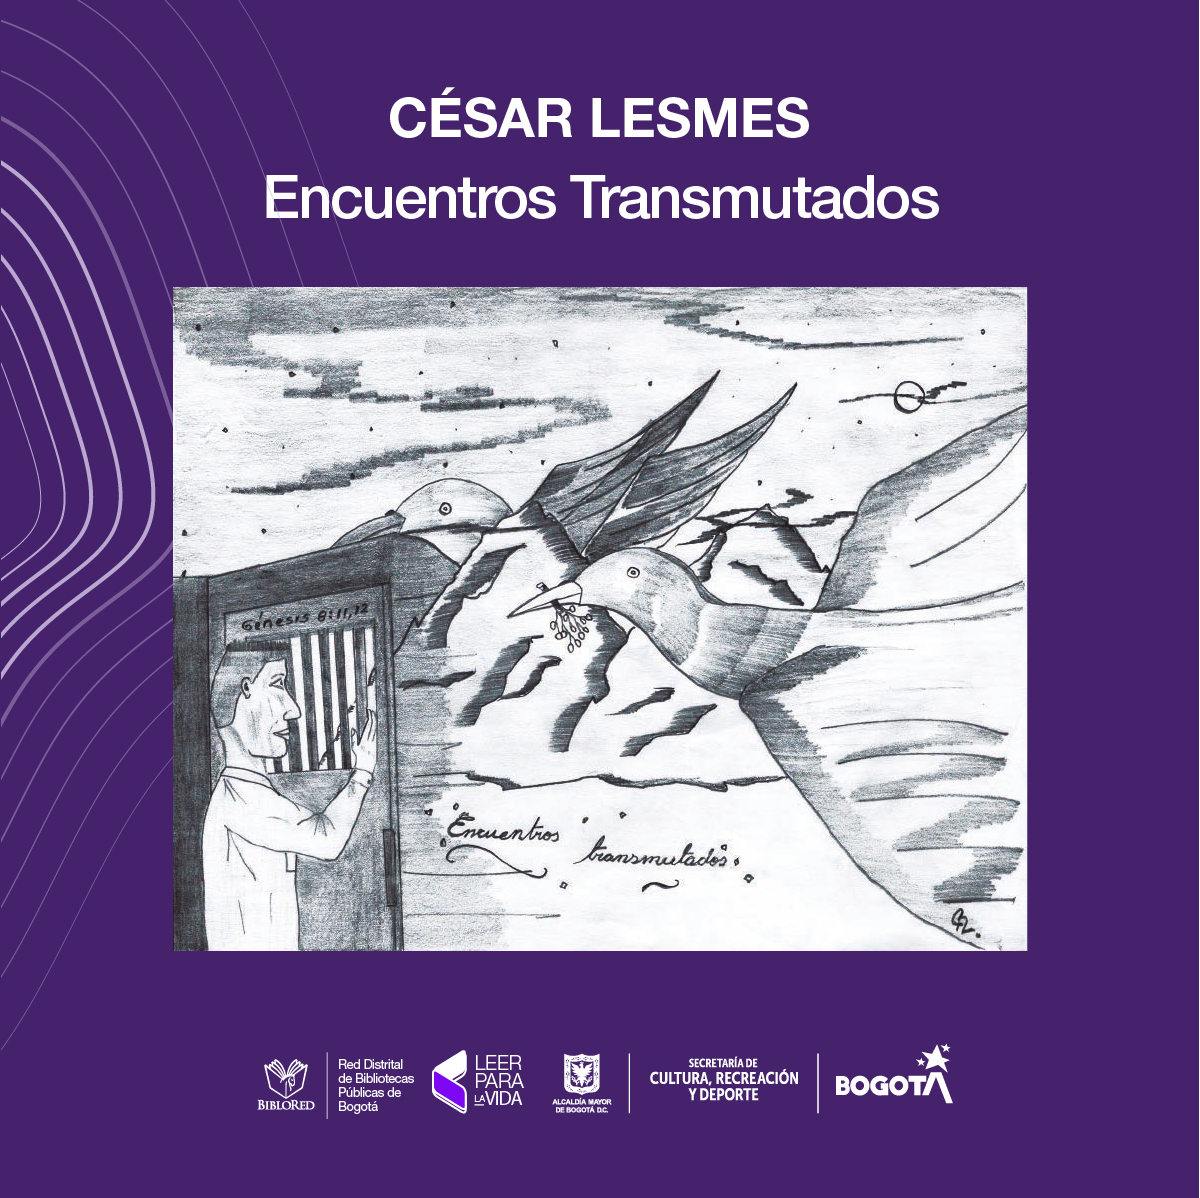 Cesar Lesmes